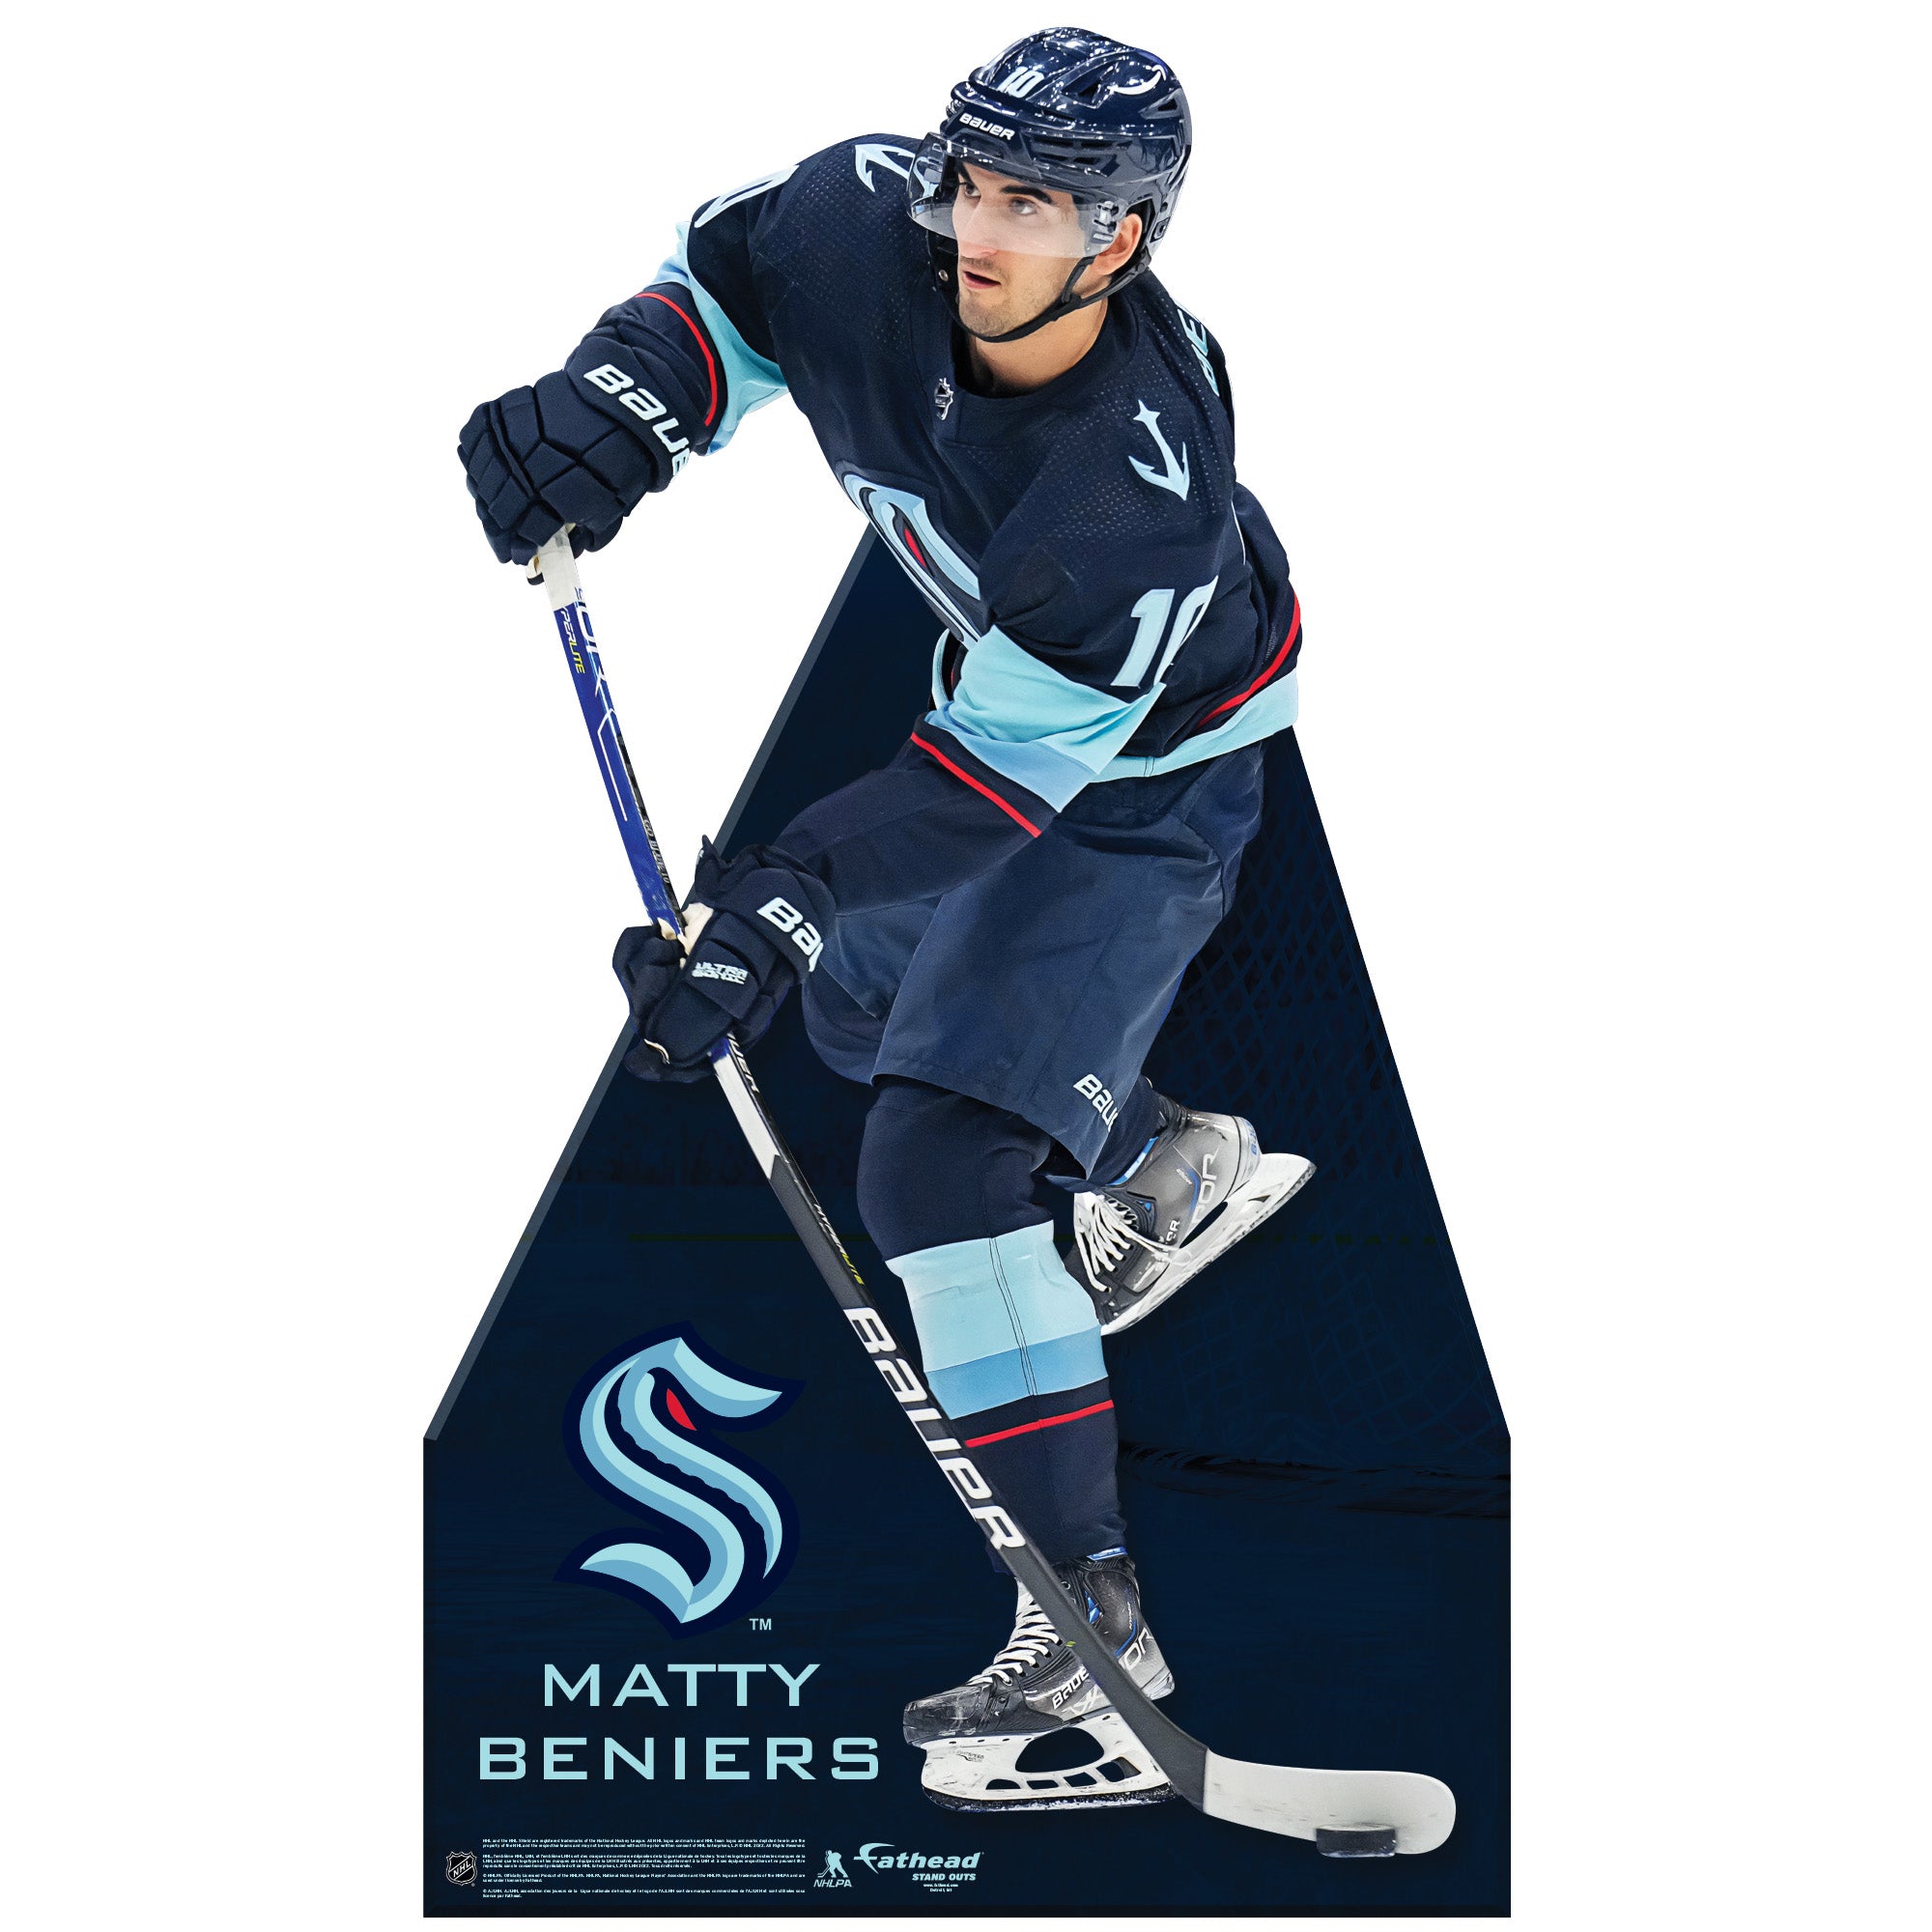  McFarlane Toys - Matty Beniers (Seattle Kraken) NHL